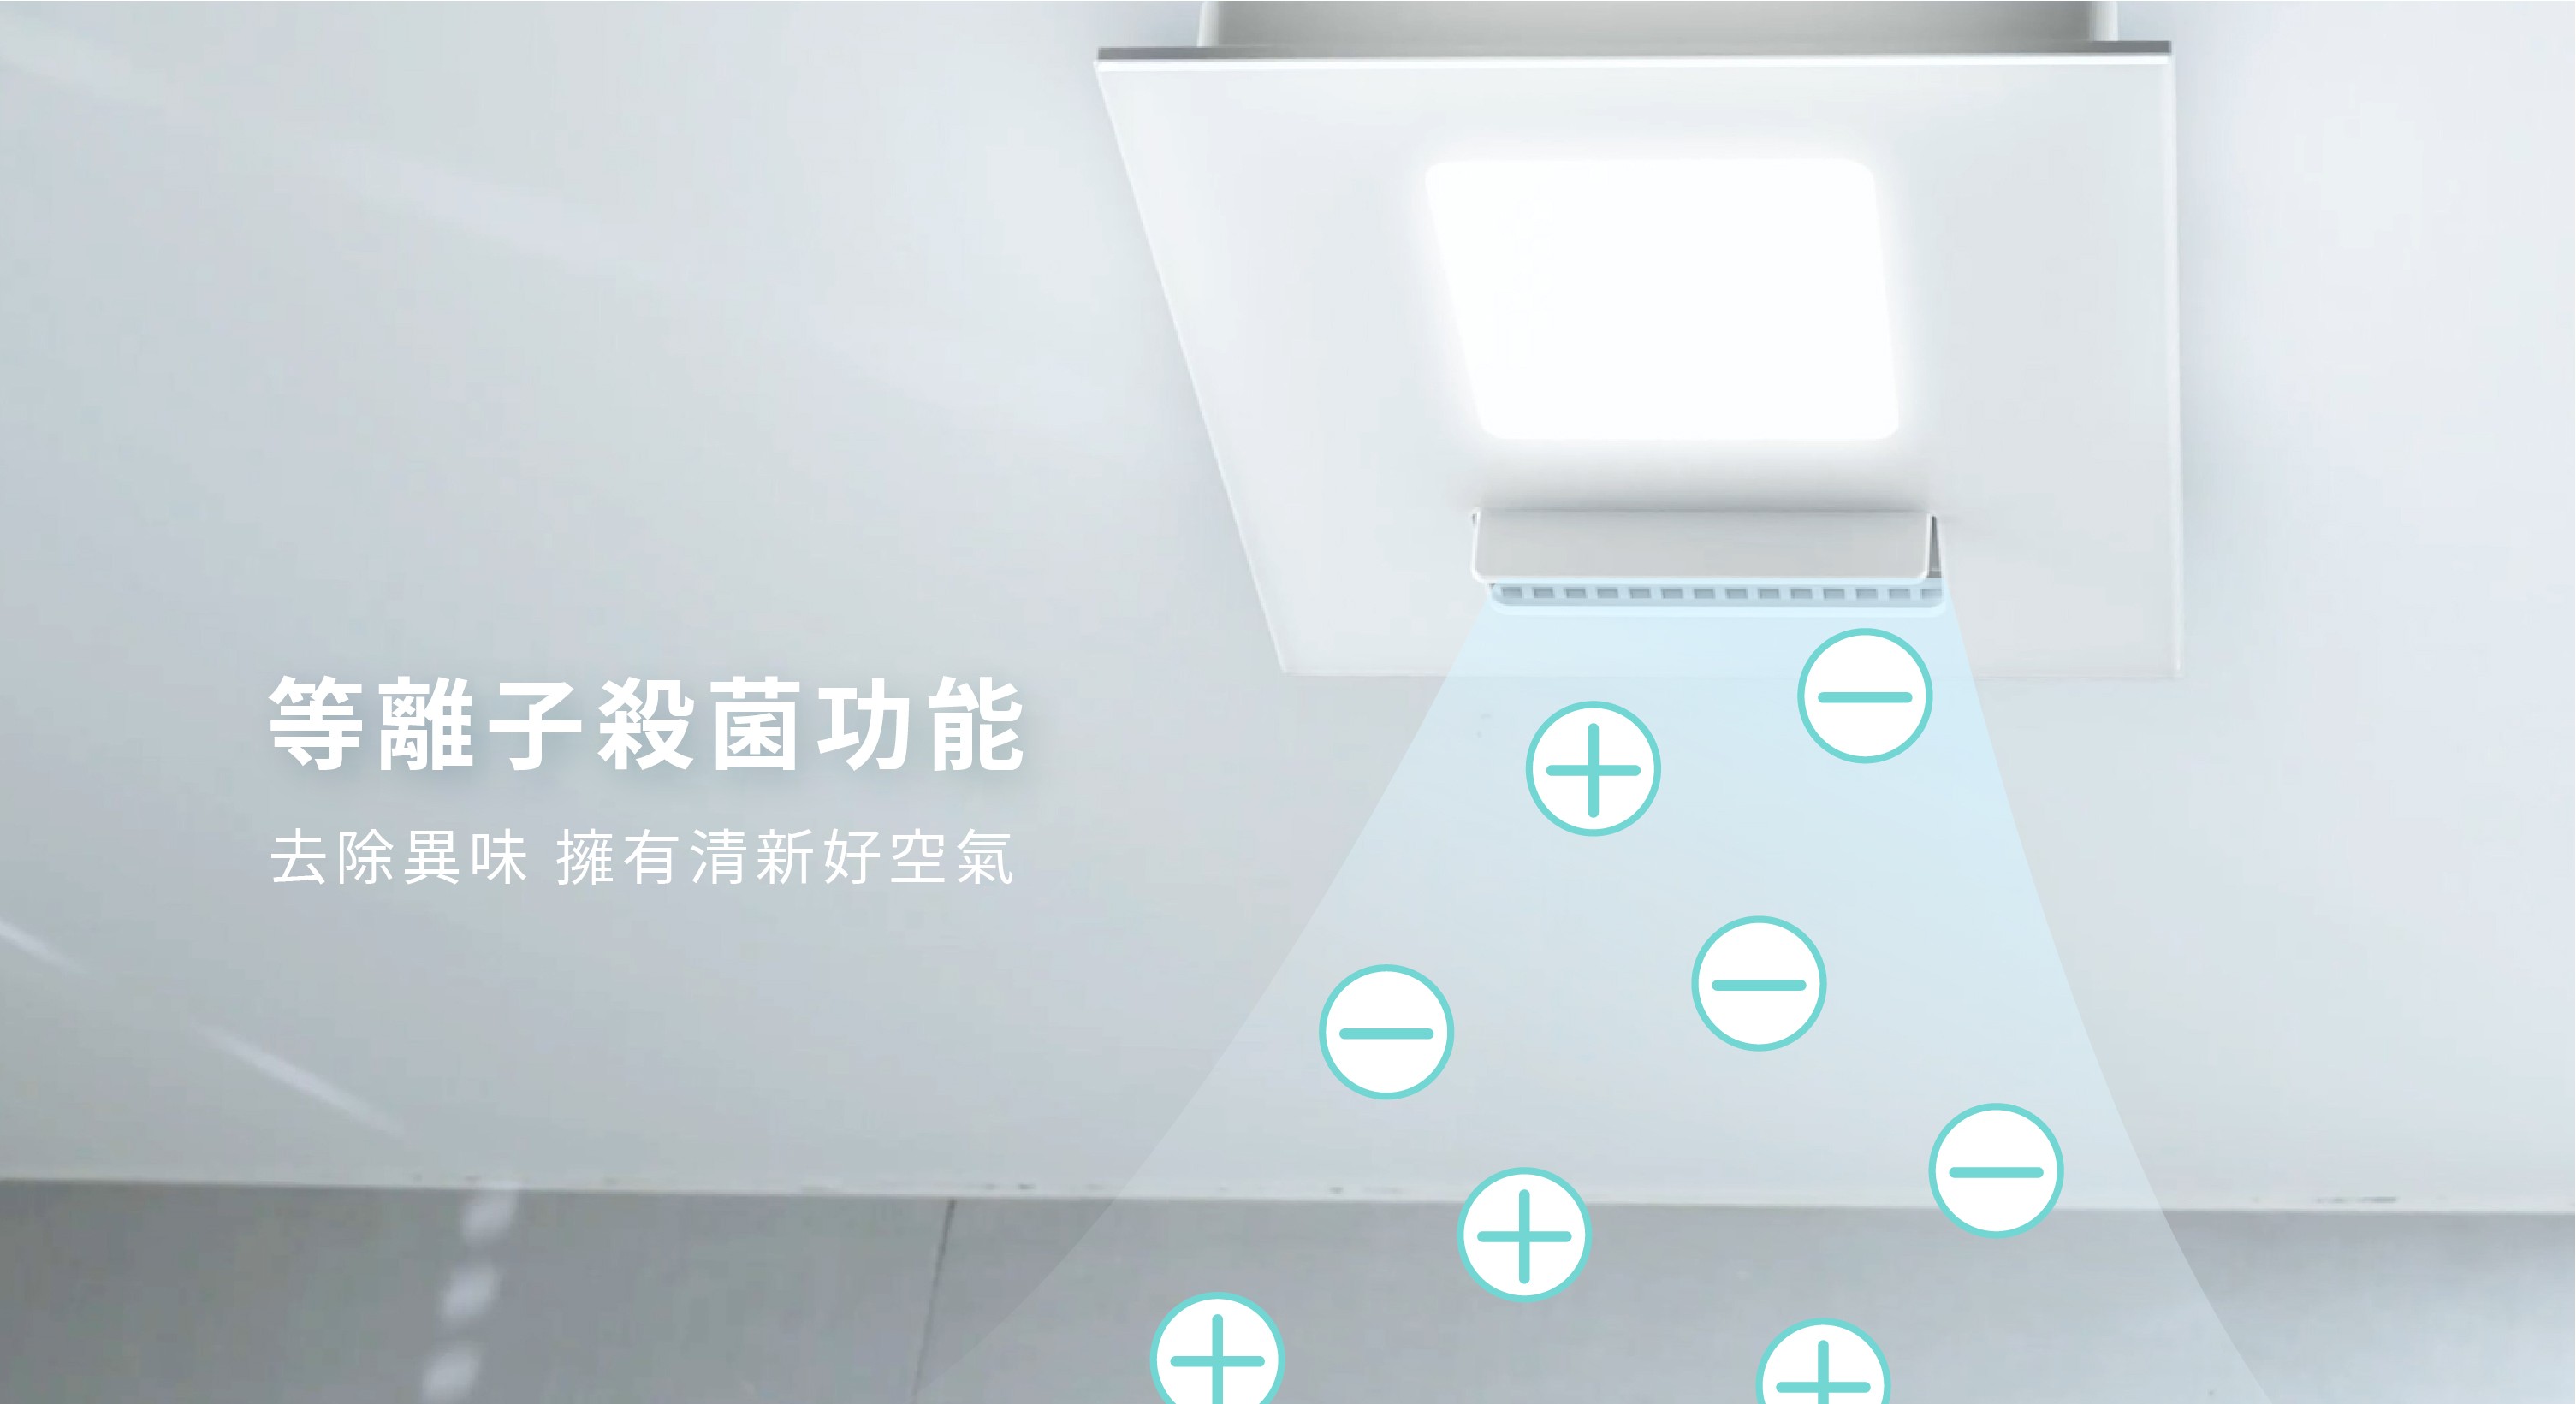 21型LED照光式可変周波数加熱式部屋干し乾燥機